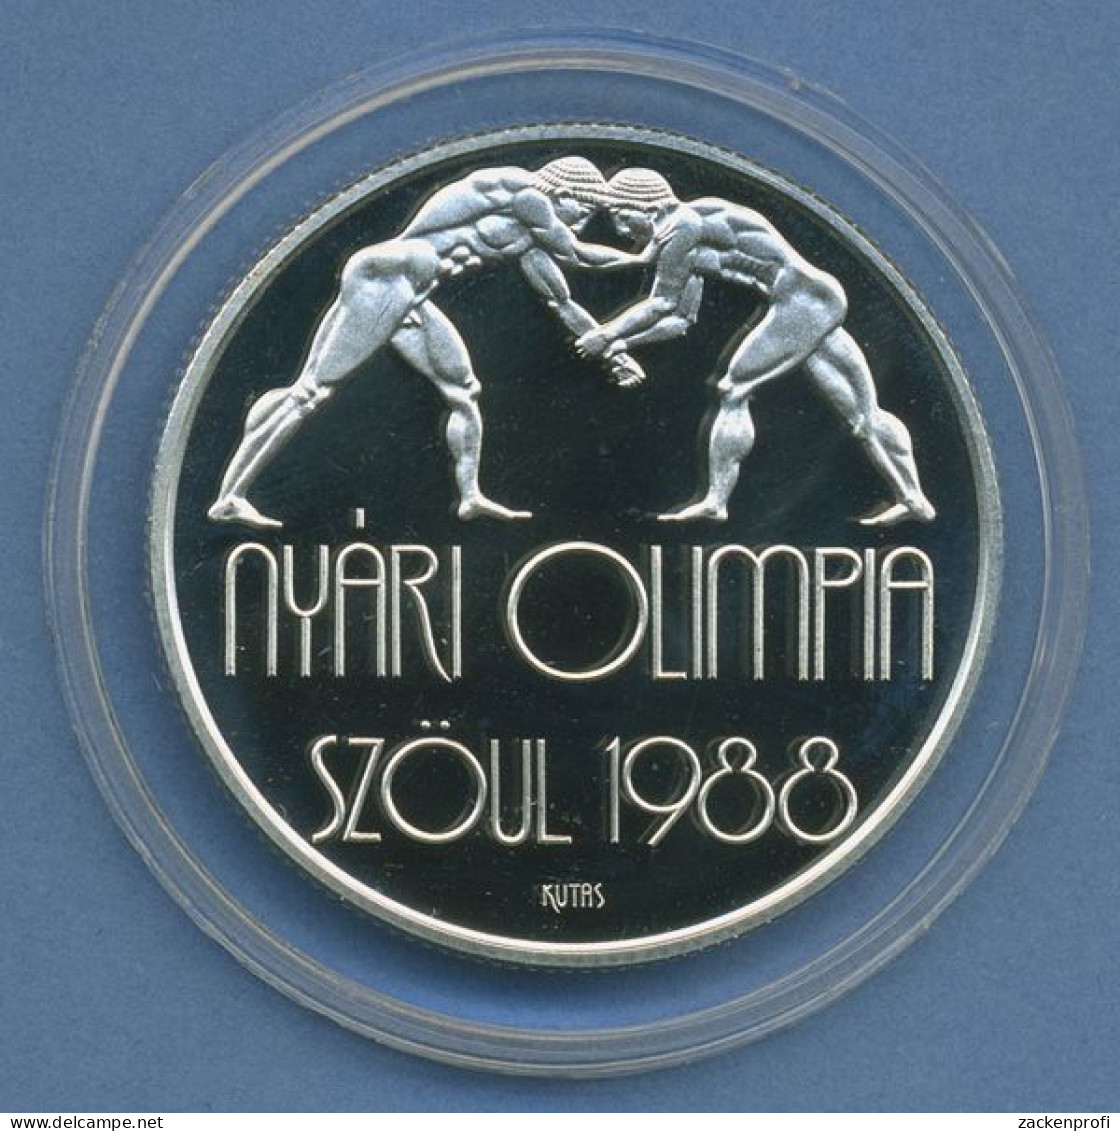 Ungarn 500 Forint 1987 Olympia Ringen, Silber, KM 660 PP In Kapsel (m4414) - Hungary